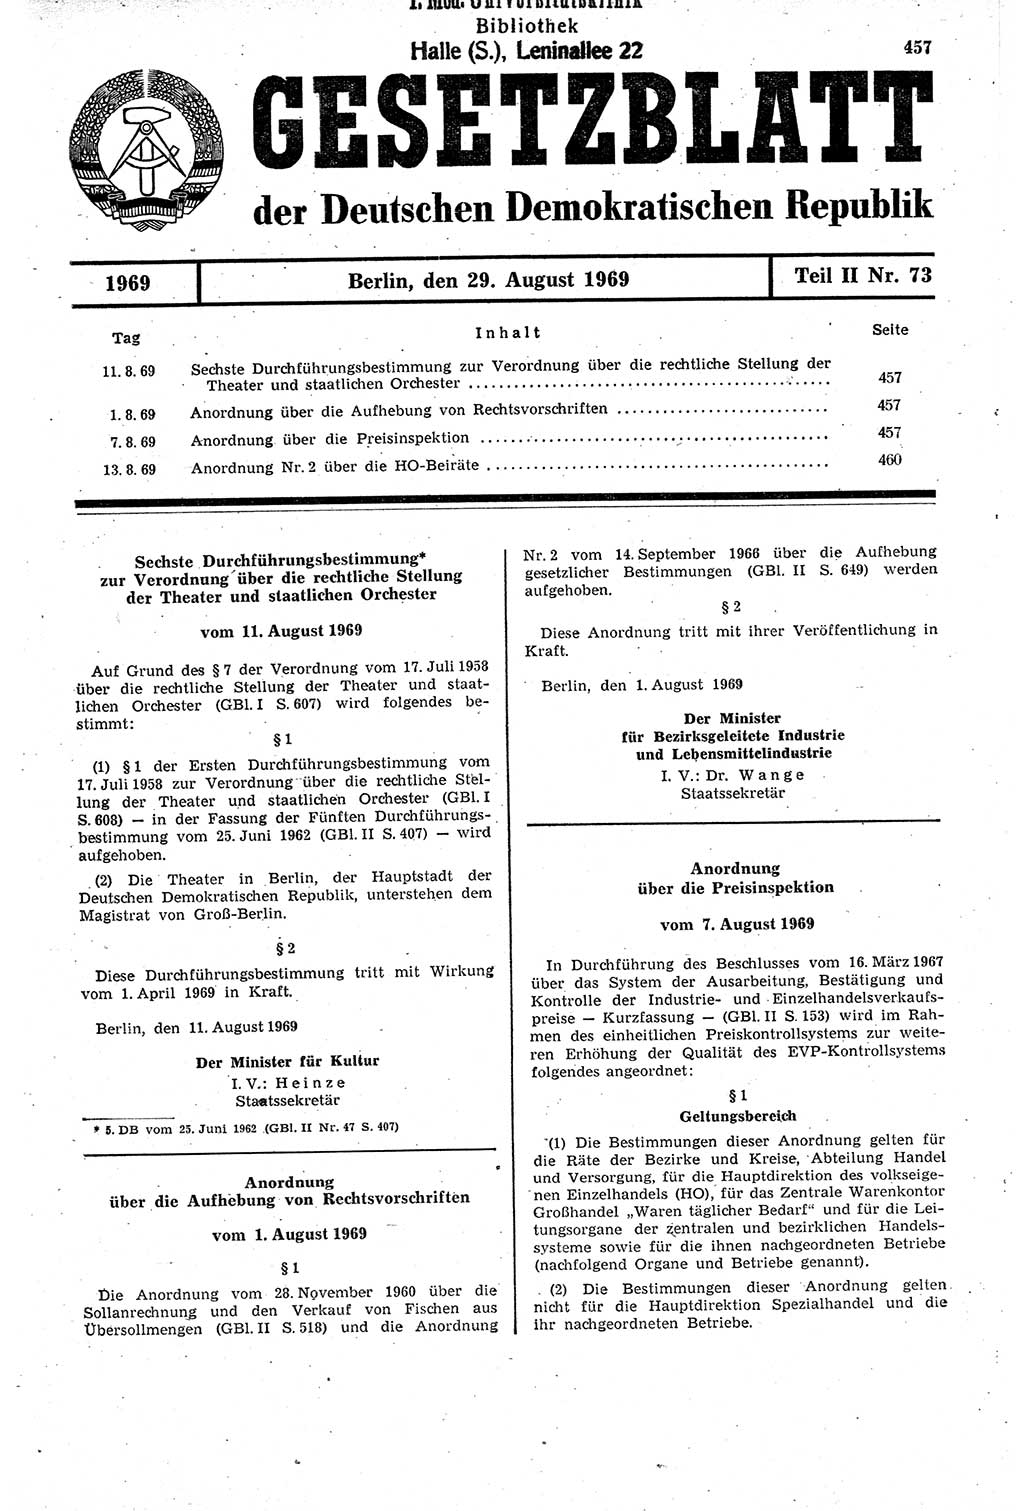 Gesetzblatt (GBl.) der Deutschen Demokratischen Republik (DDR) Teil ⅠⅠ 1969, Seite 457 (GBl. DDR ⅠⅠ 1969, S. 457)